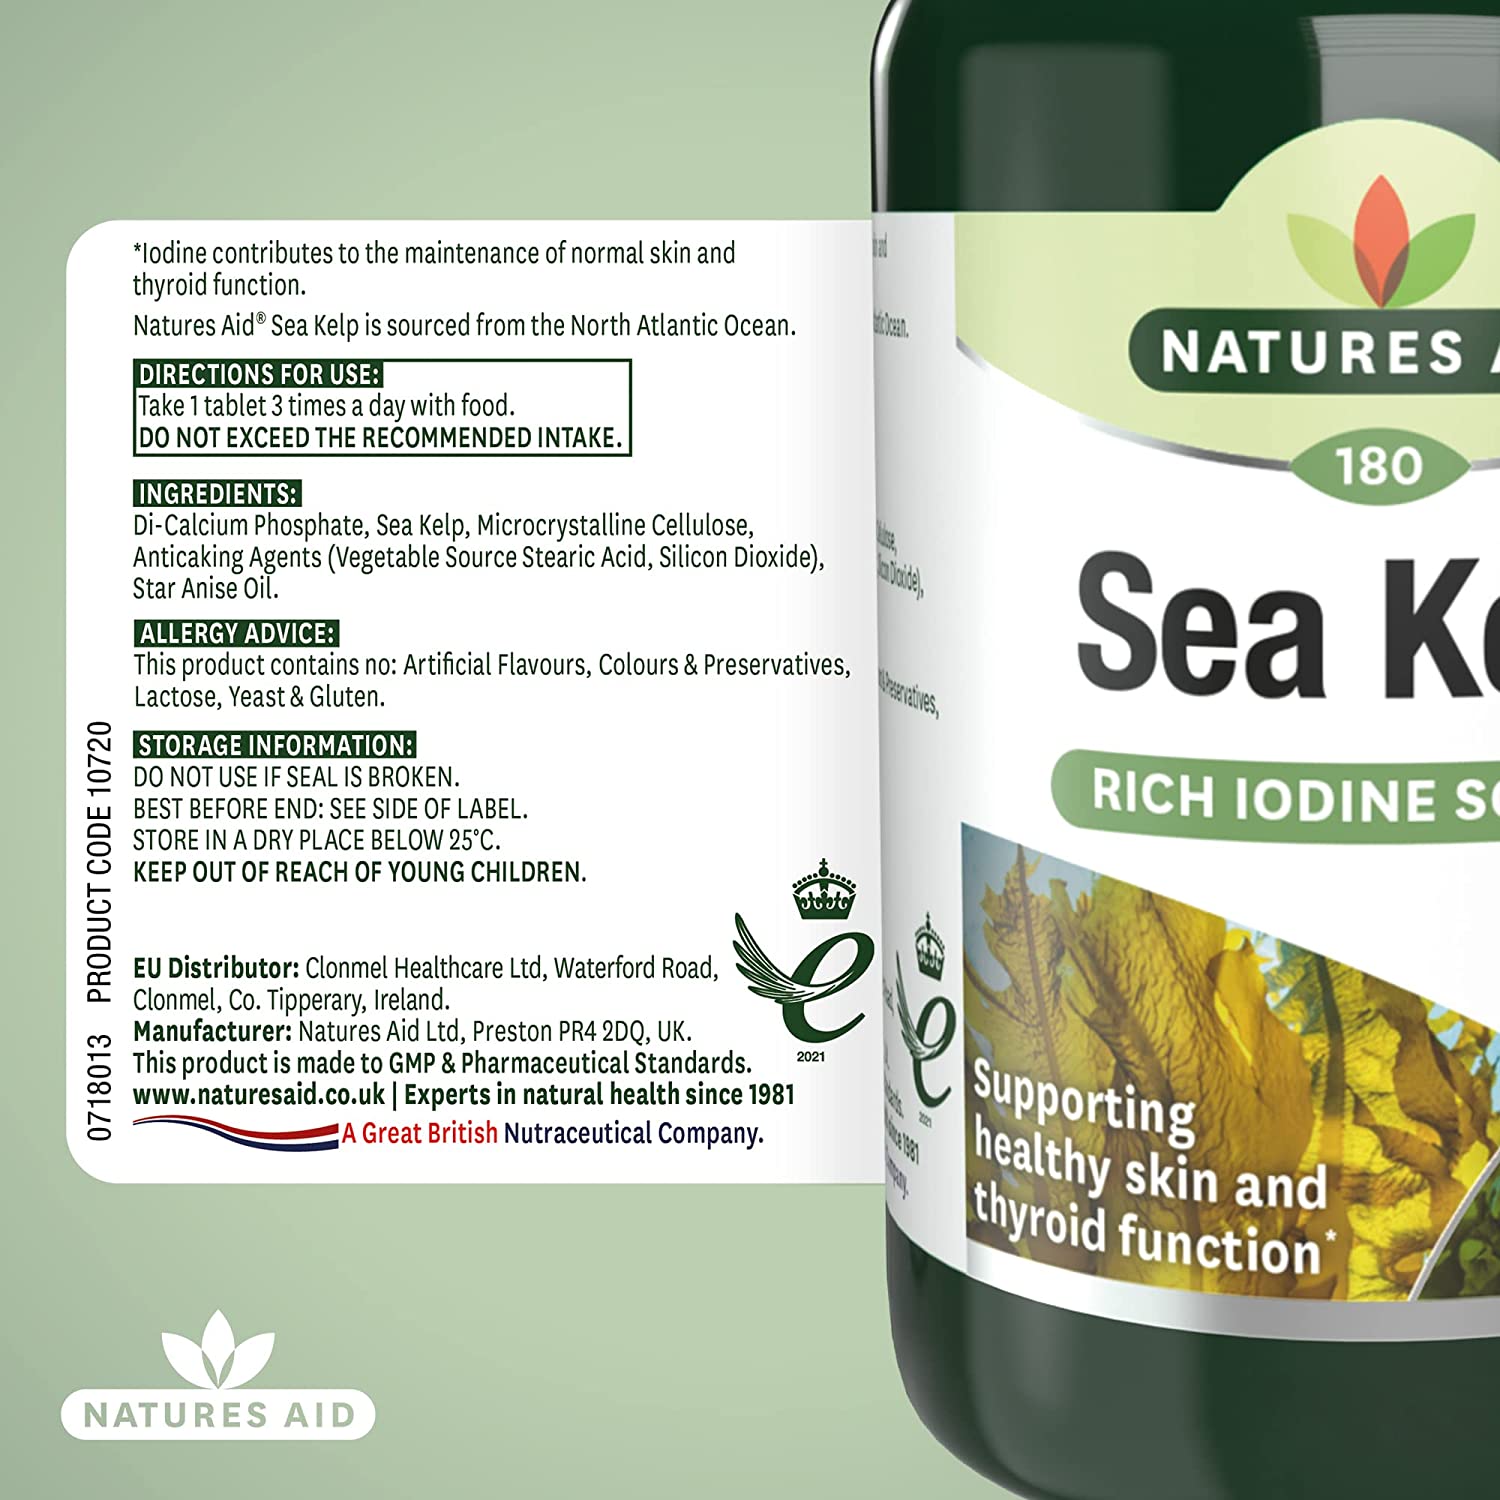 Sea Kelp 187mg 180 Tablets